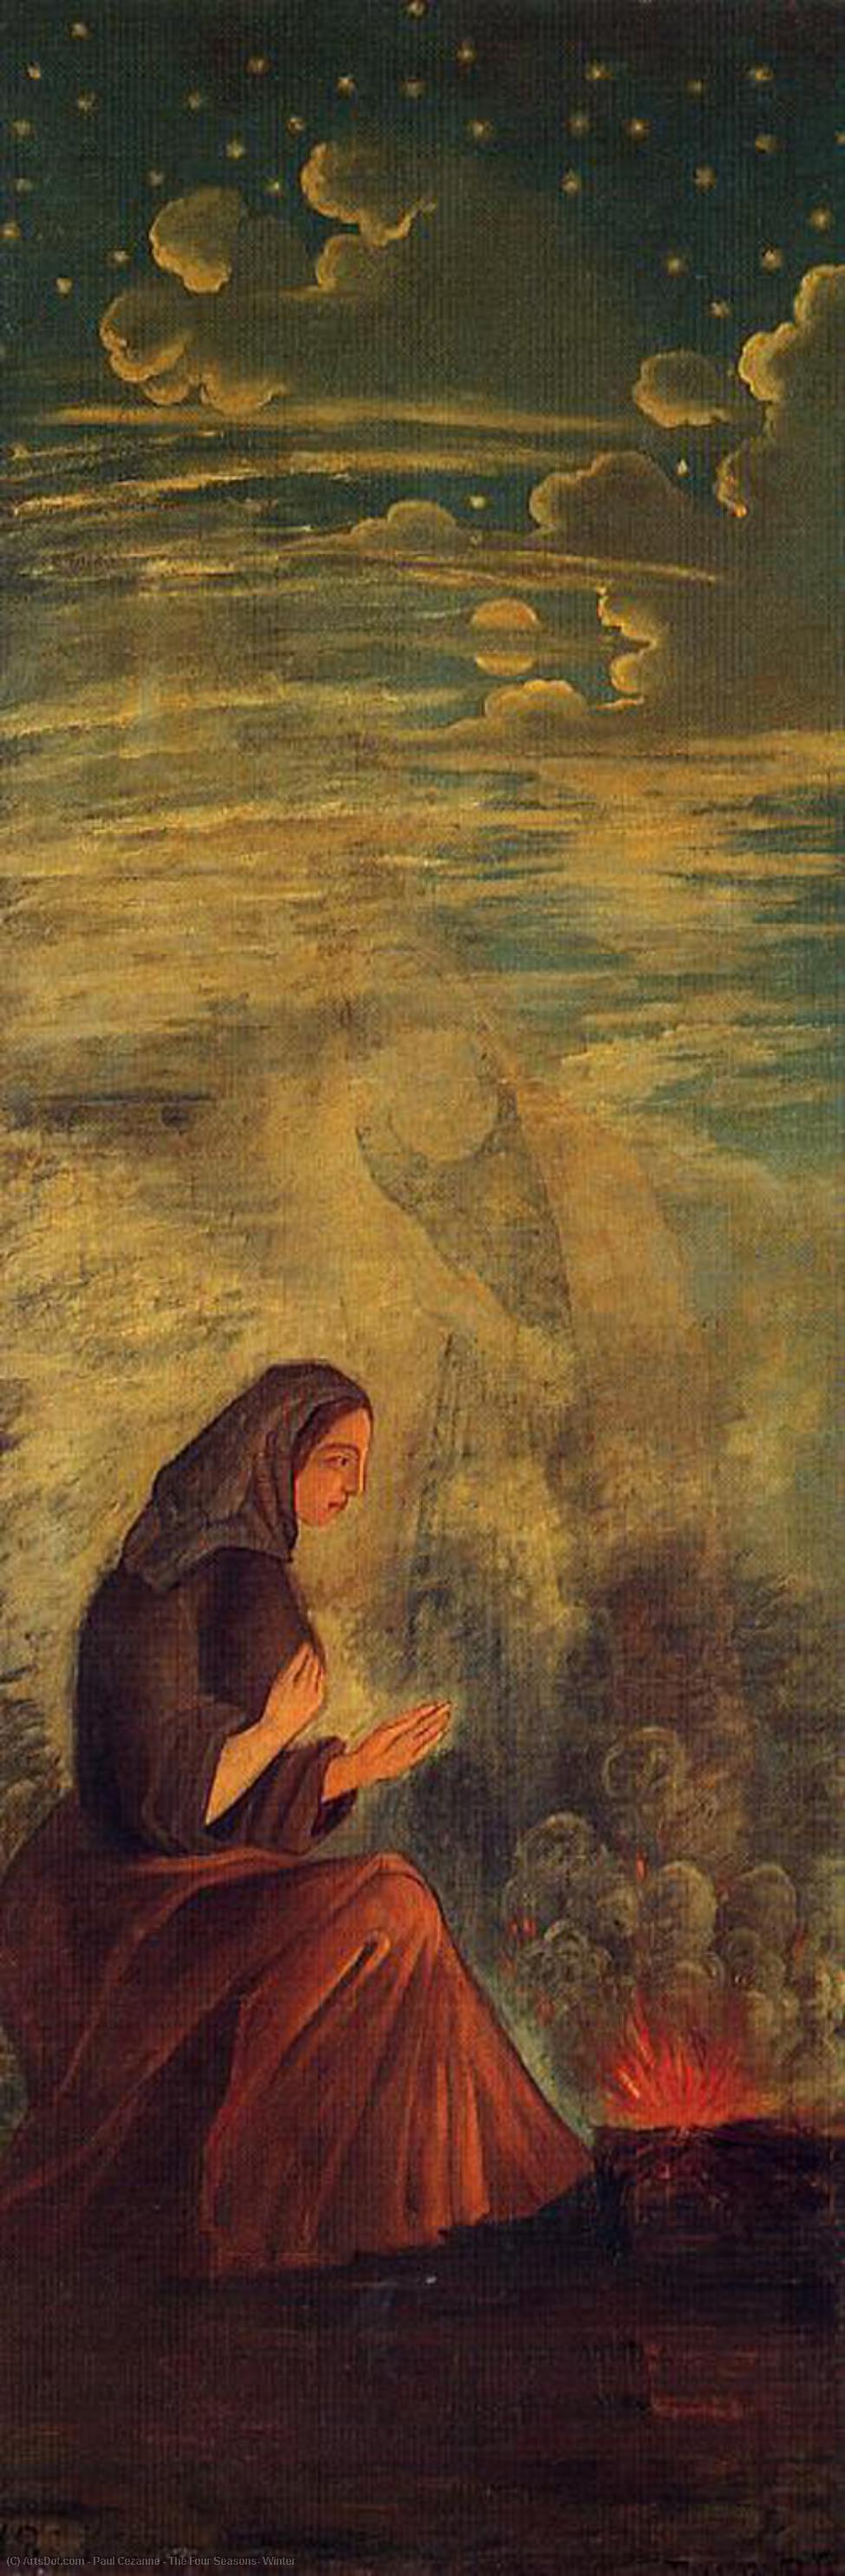 WikiOO.org - Encyclopedia of Fine Arts - Festés, Grafika Paul Cezanne - The Four Seasons, Winter